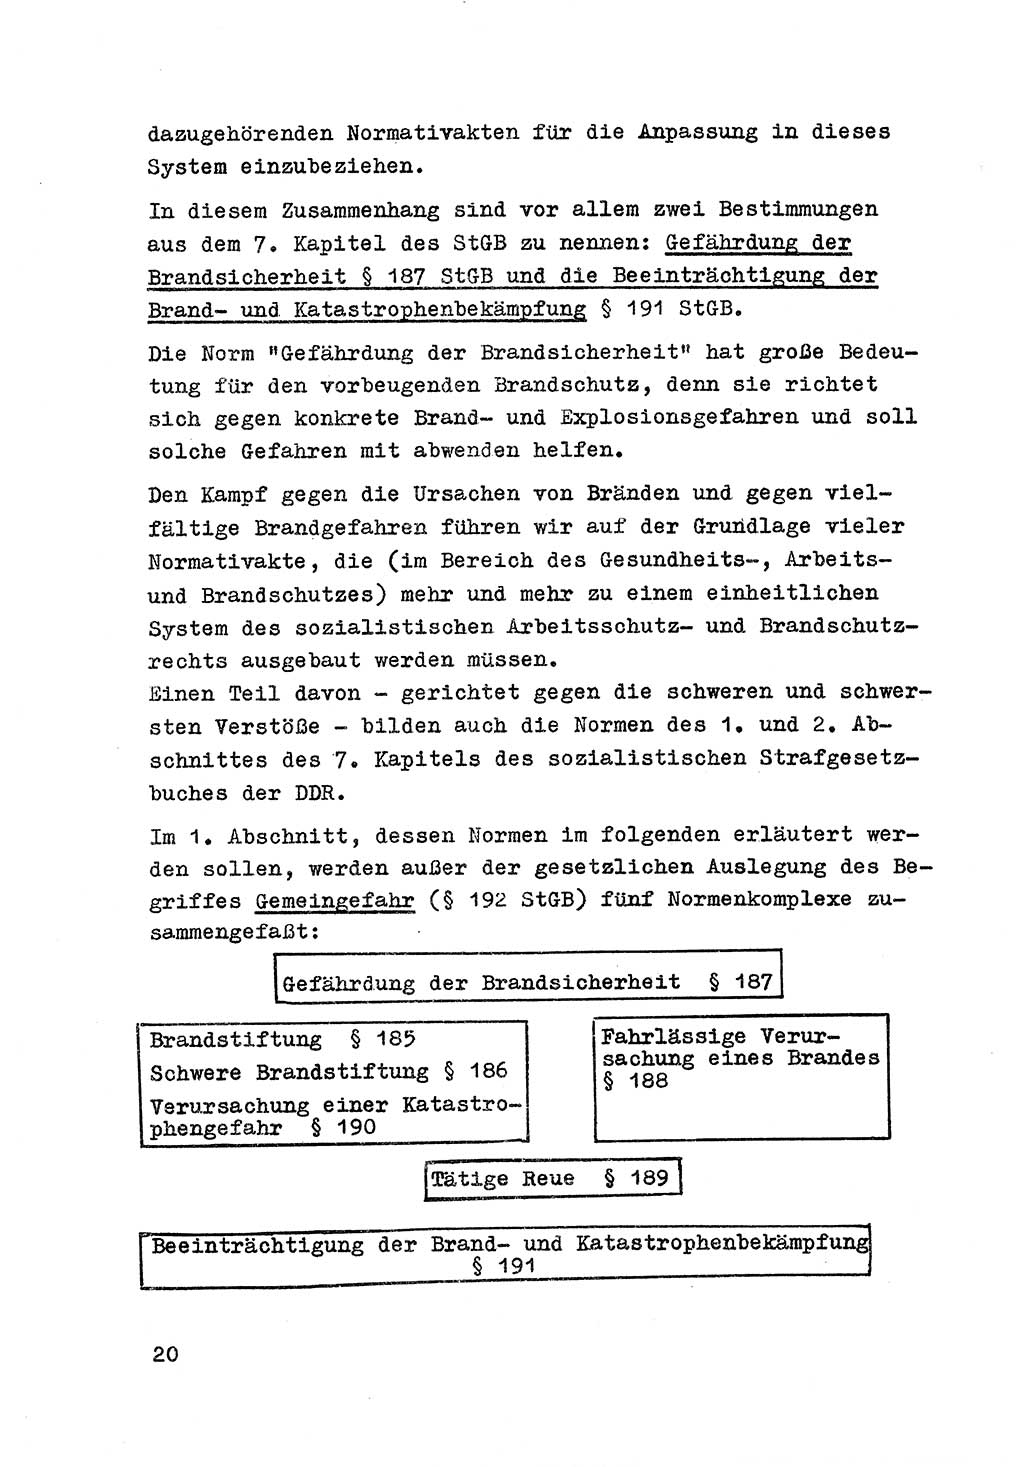 Strafrecht der DDR (Deutsche Demokratische Republik), Besonderer Teil, Lehrmaterial, Heft 7 1970, Seite 20 (Strafr. DDR BT Lehrmat. H. 7 1970, S. 20)